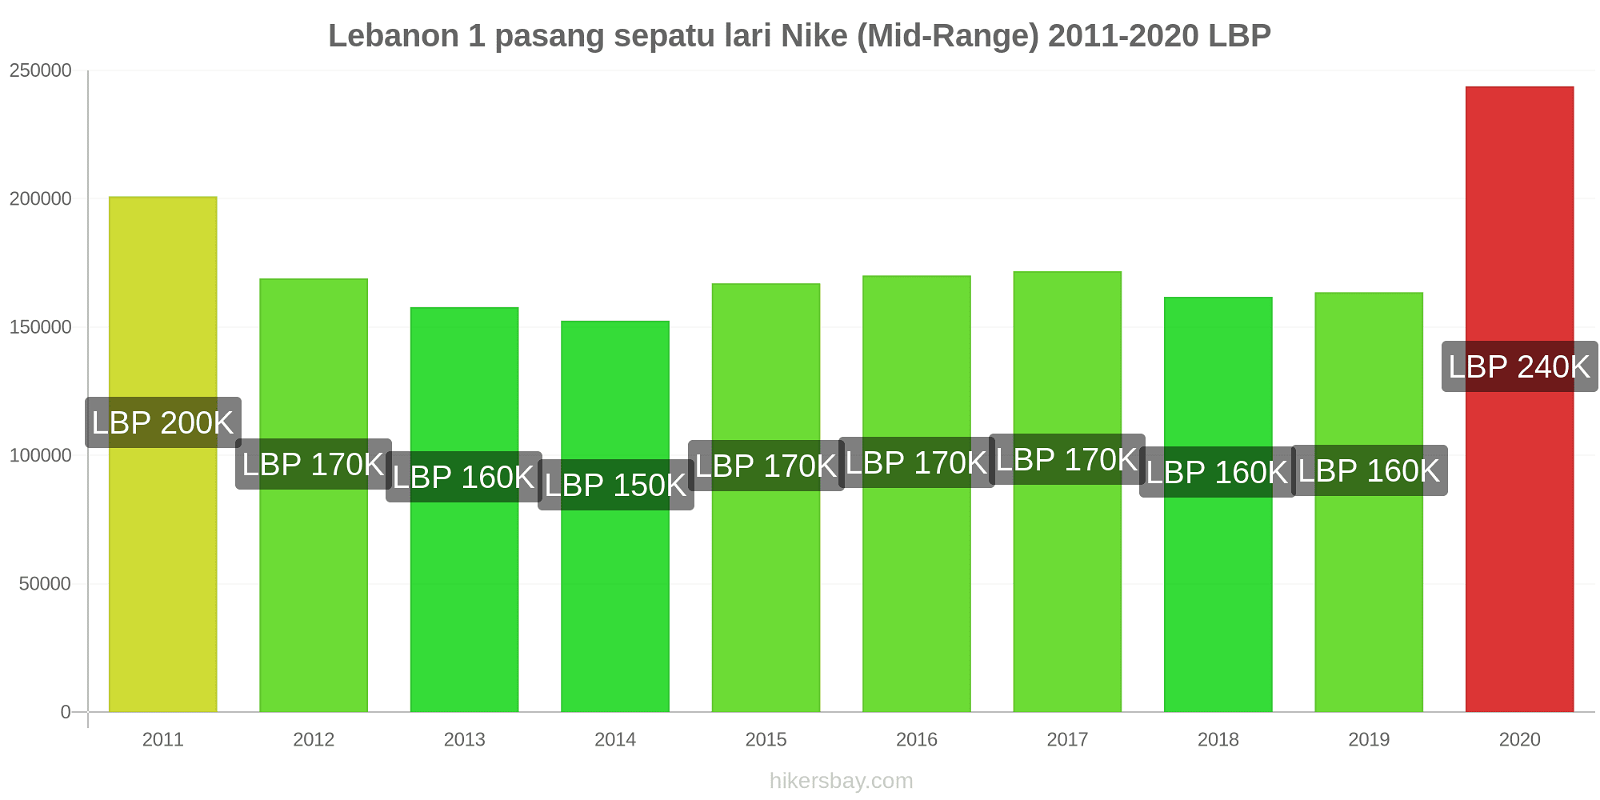 Lebanon perubahan harga 1 pasang sepatu lari Nike (Mid-Range) hikersbay.com